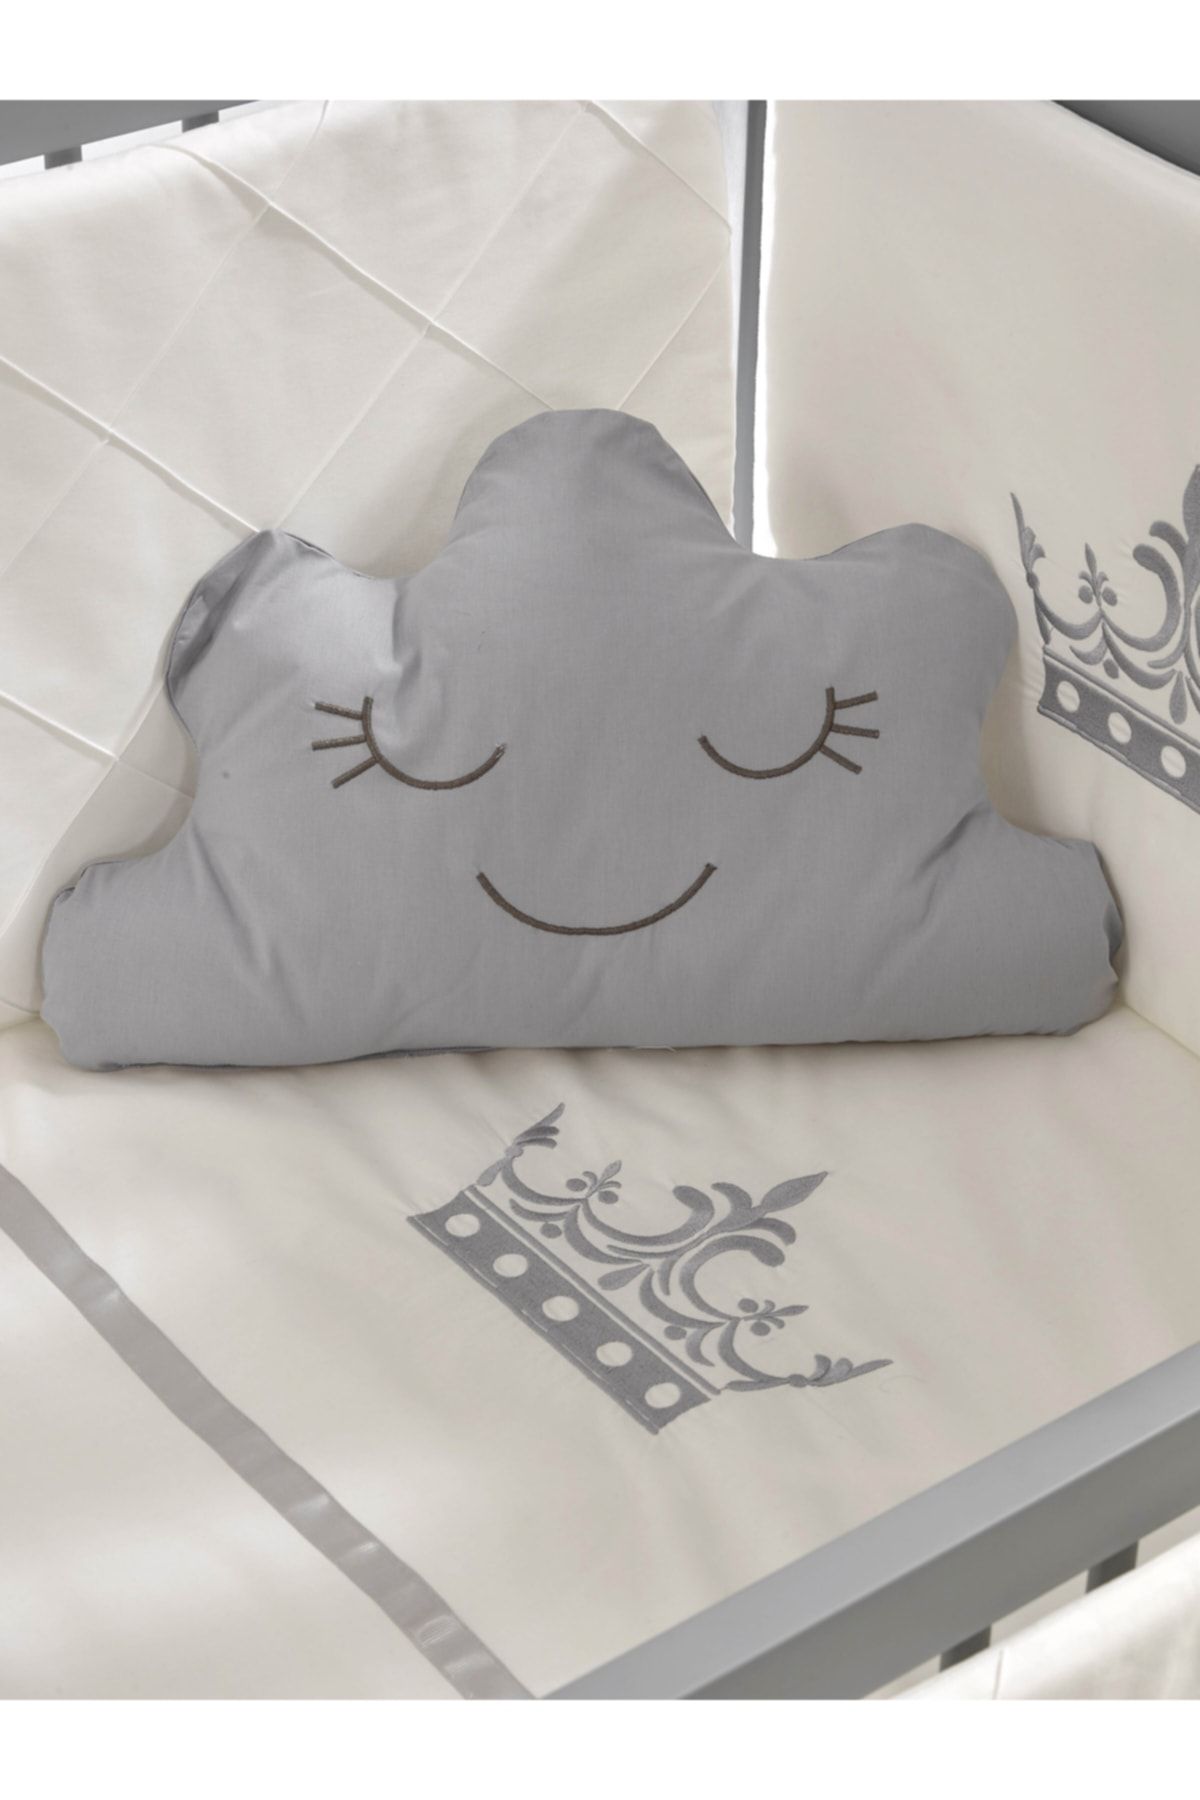 Meltem Smart Motto Nakışlı Gri Bebek Uyku Seti - 60x120 Cm